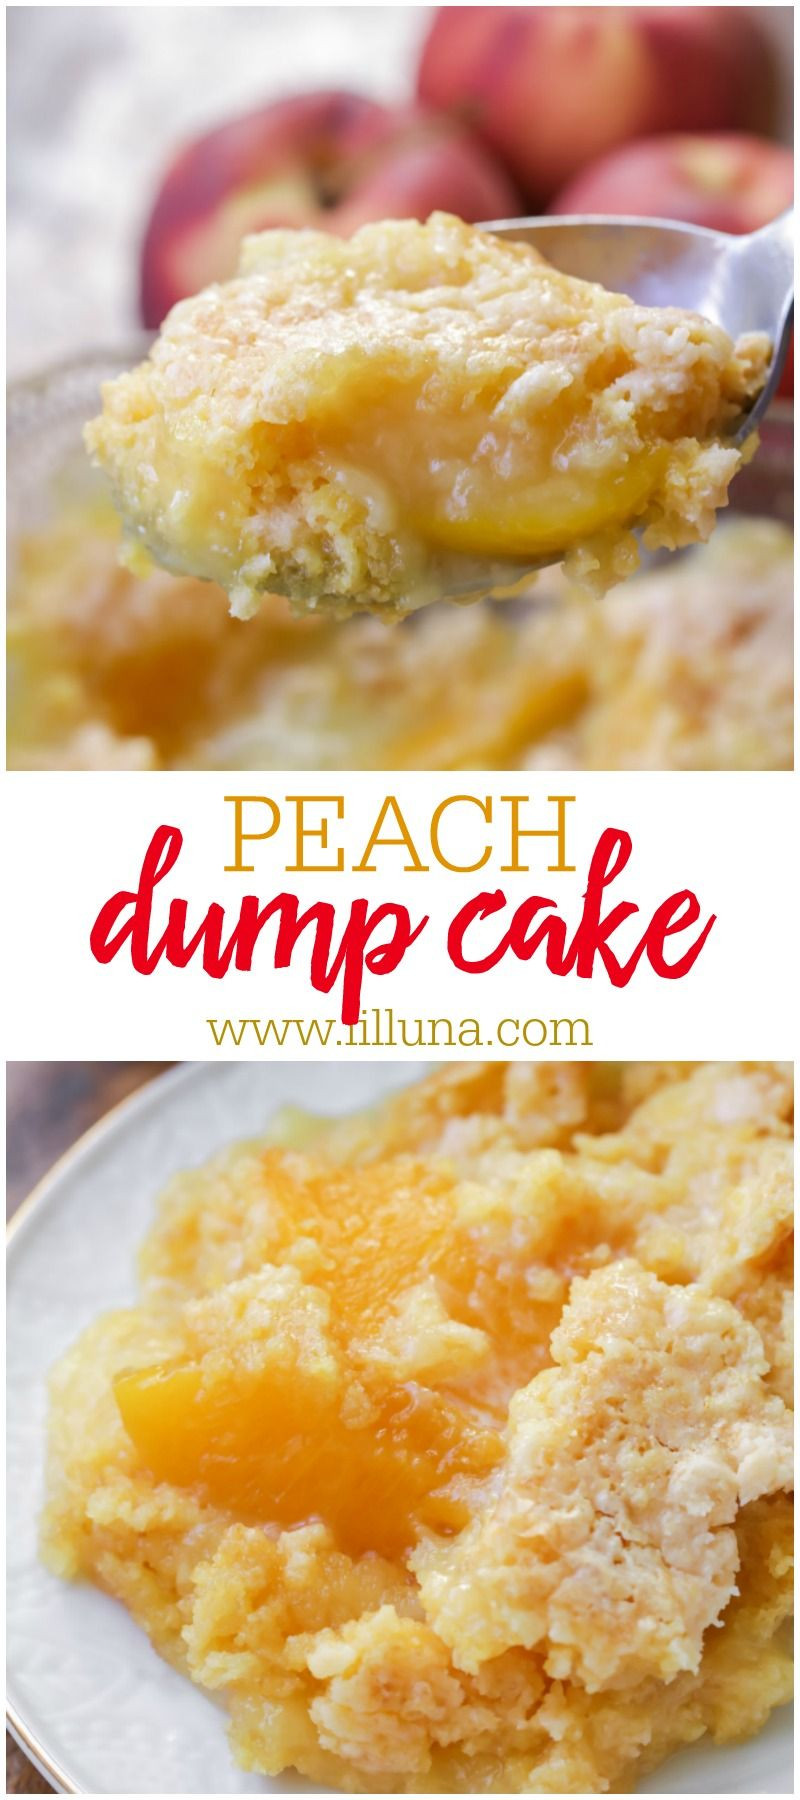 Peach Dump Cake With Peach Pie Filling
 Peach Dump Cake Recipe